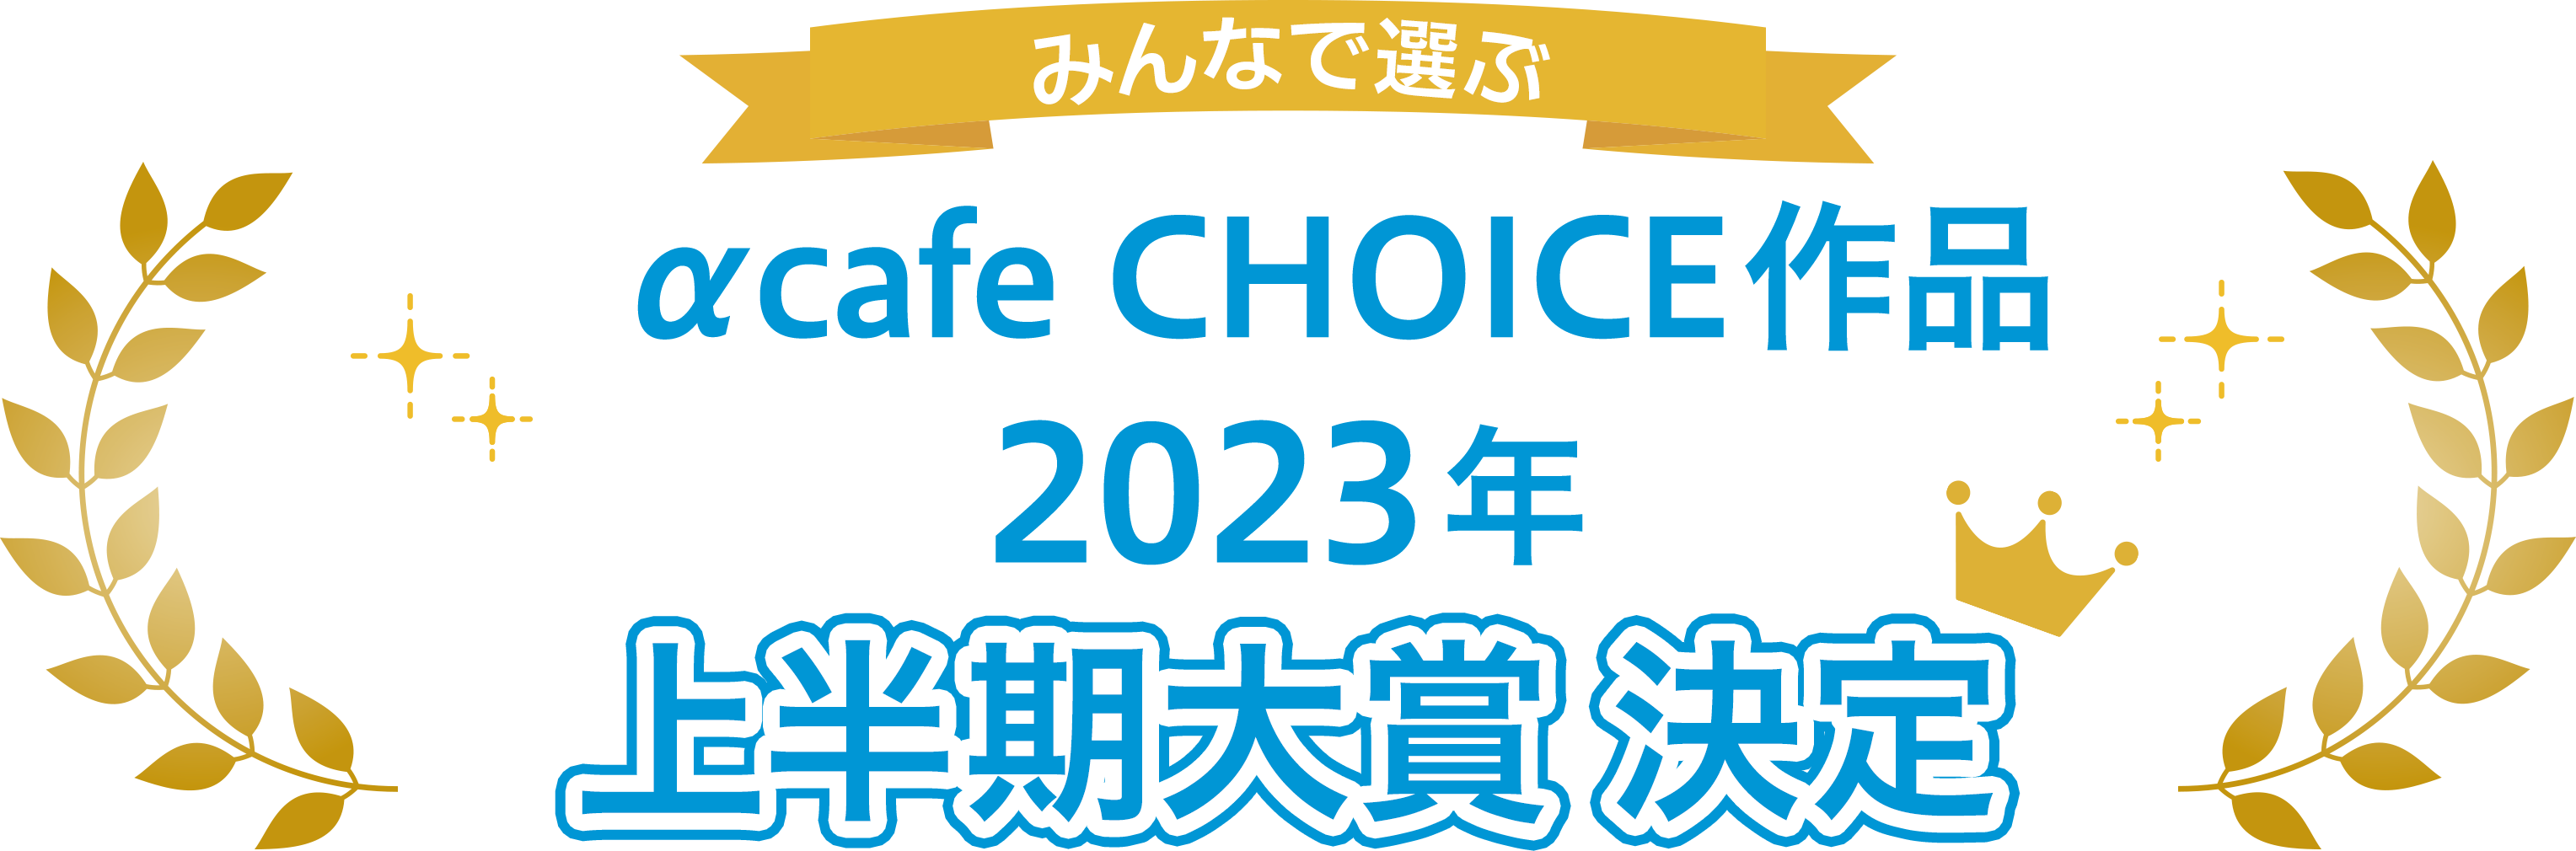 みんなで選ぶ α cafe CHOICE作品 2023年上半期大賞 投票期間：2023年1月30日 - 2月28日